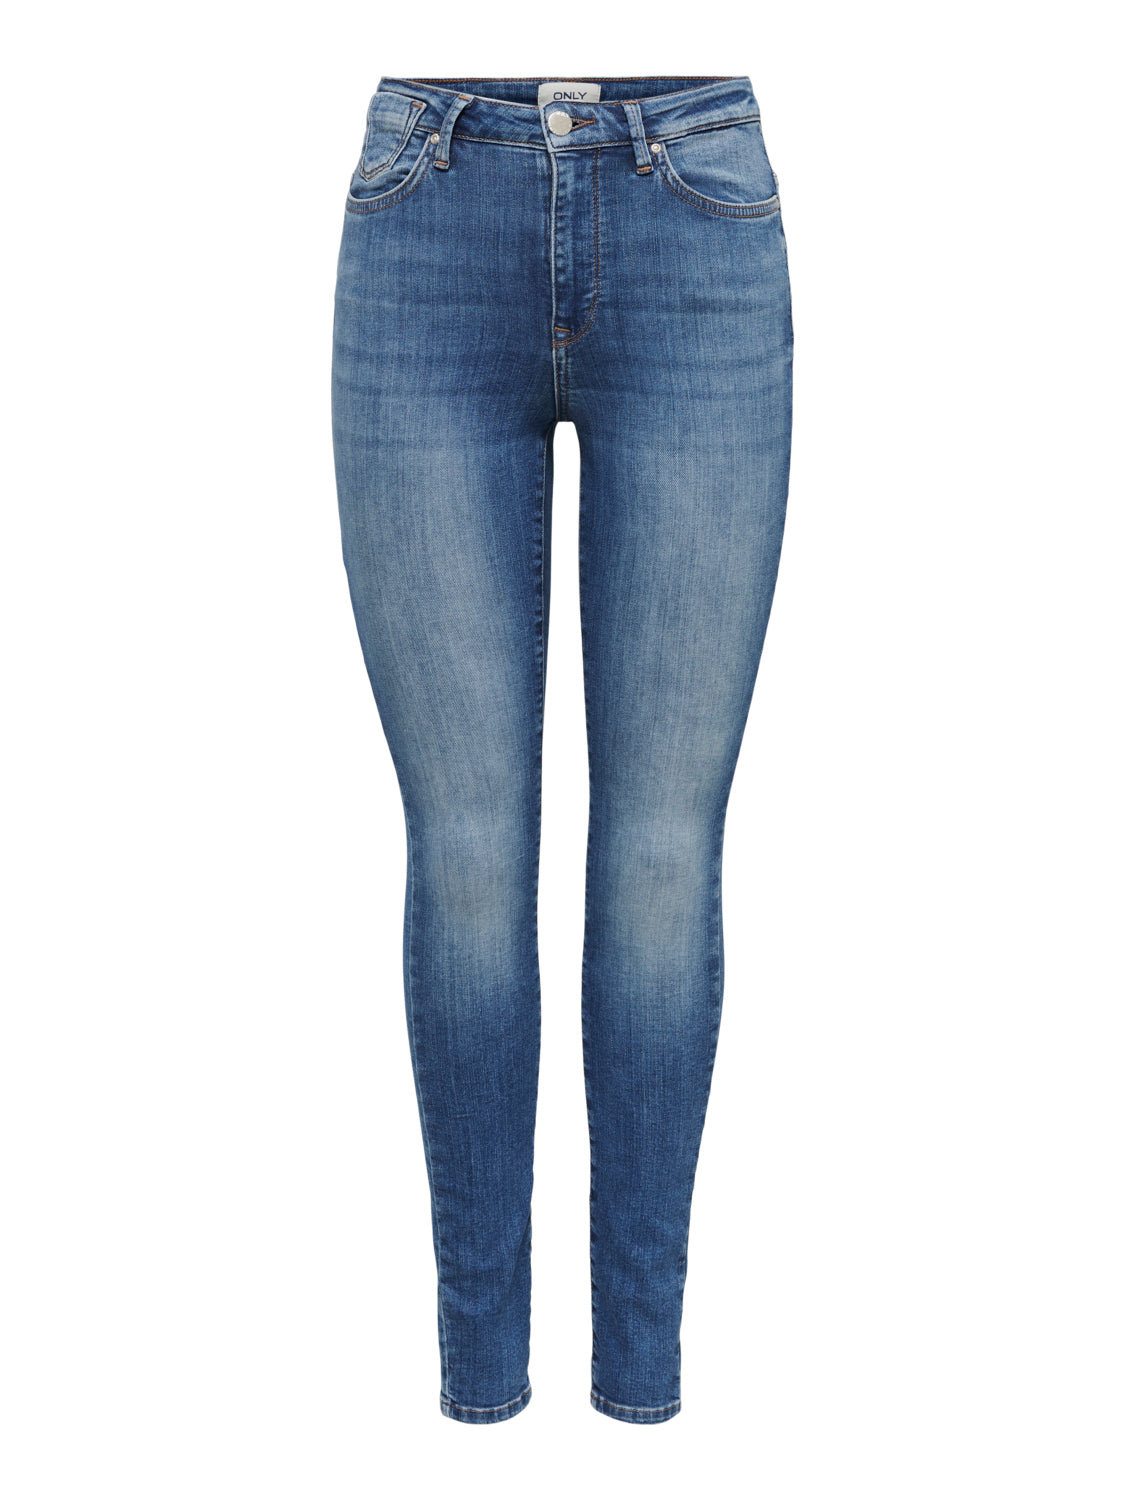 ONLFOREVER Jeans - Medium Blue Denim